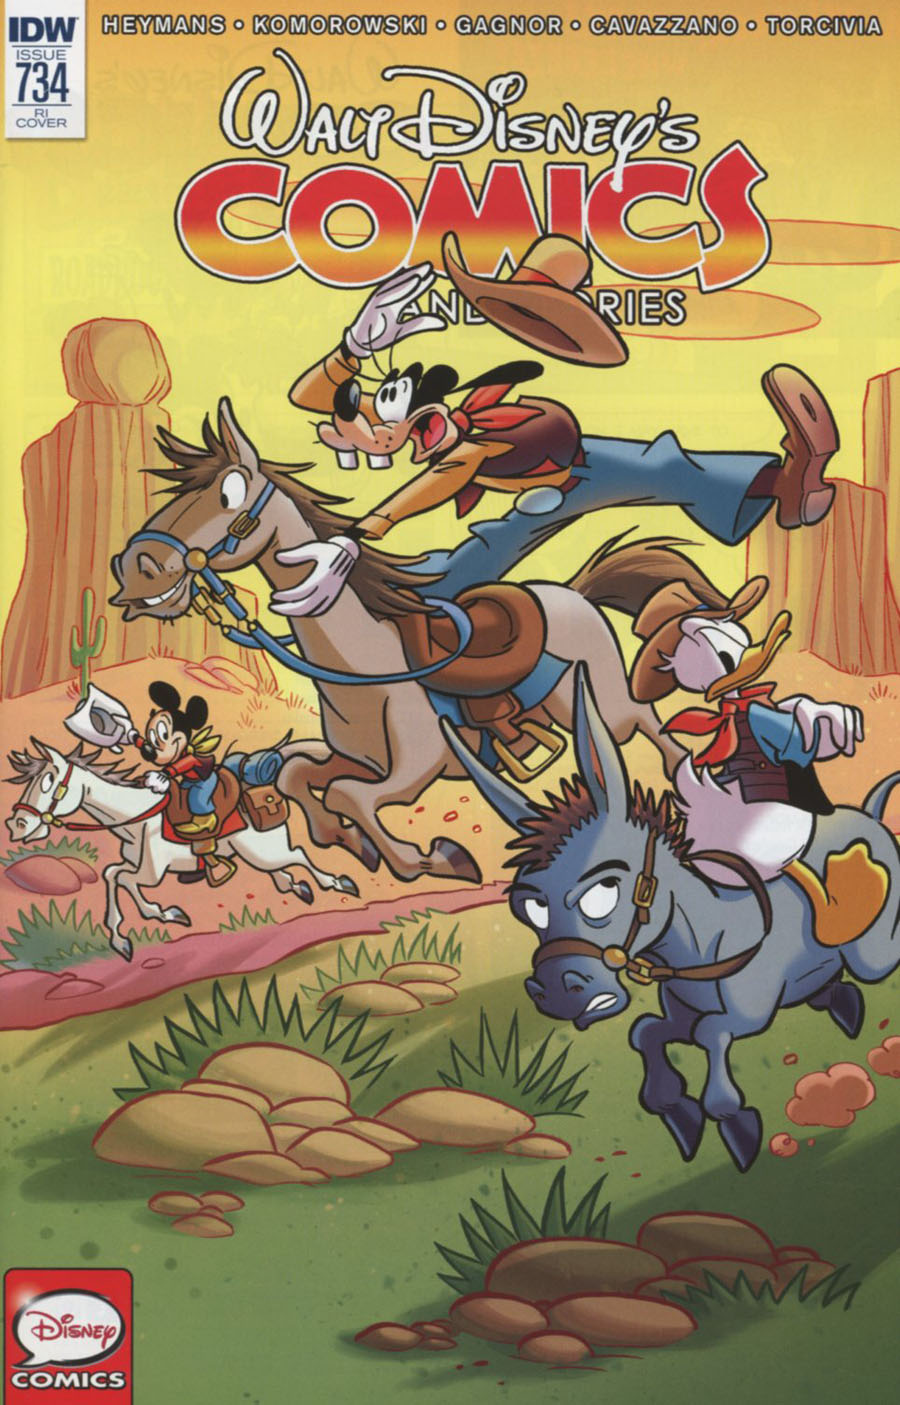 Walt Disneys Comics & Stories #734 Cover C Incentive Marco Mazzarello Variant Cover